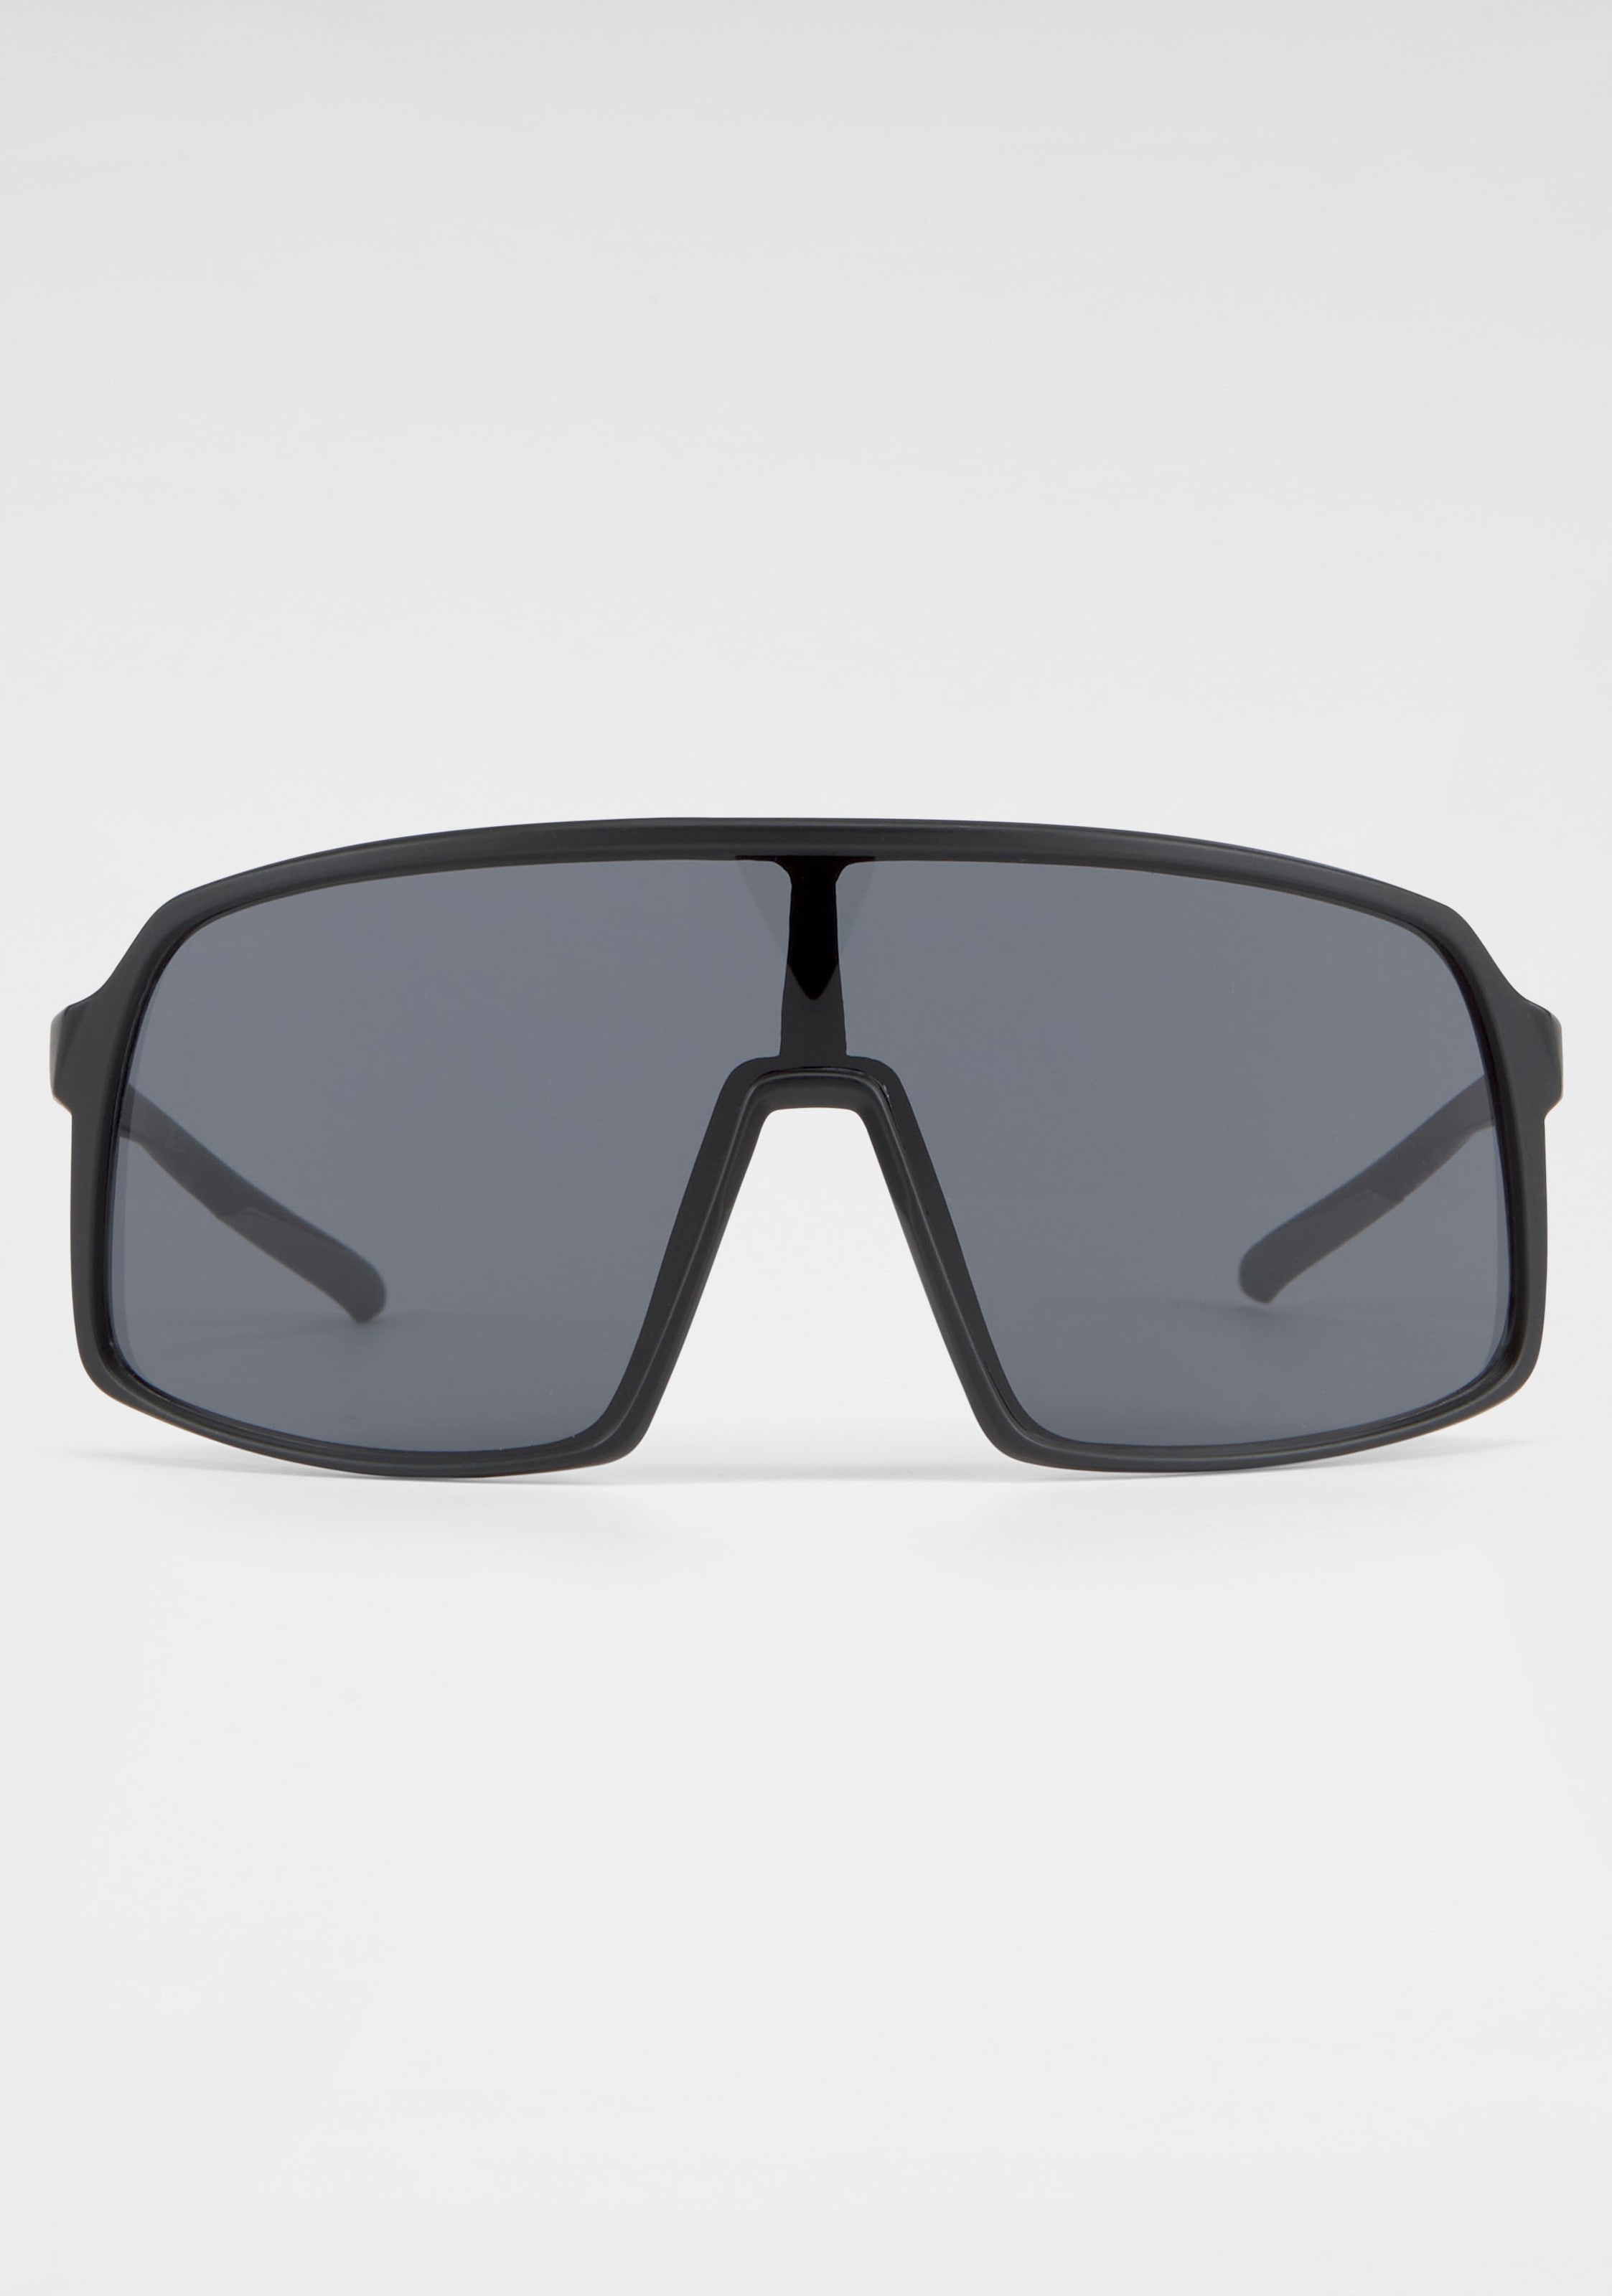 BACK IN Gläser Sonnenbrille, Eyewear BLACK bestellen online große